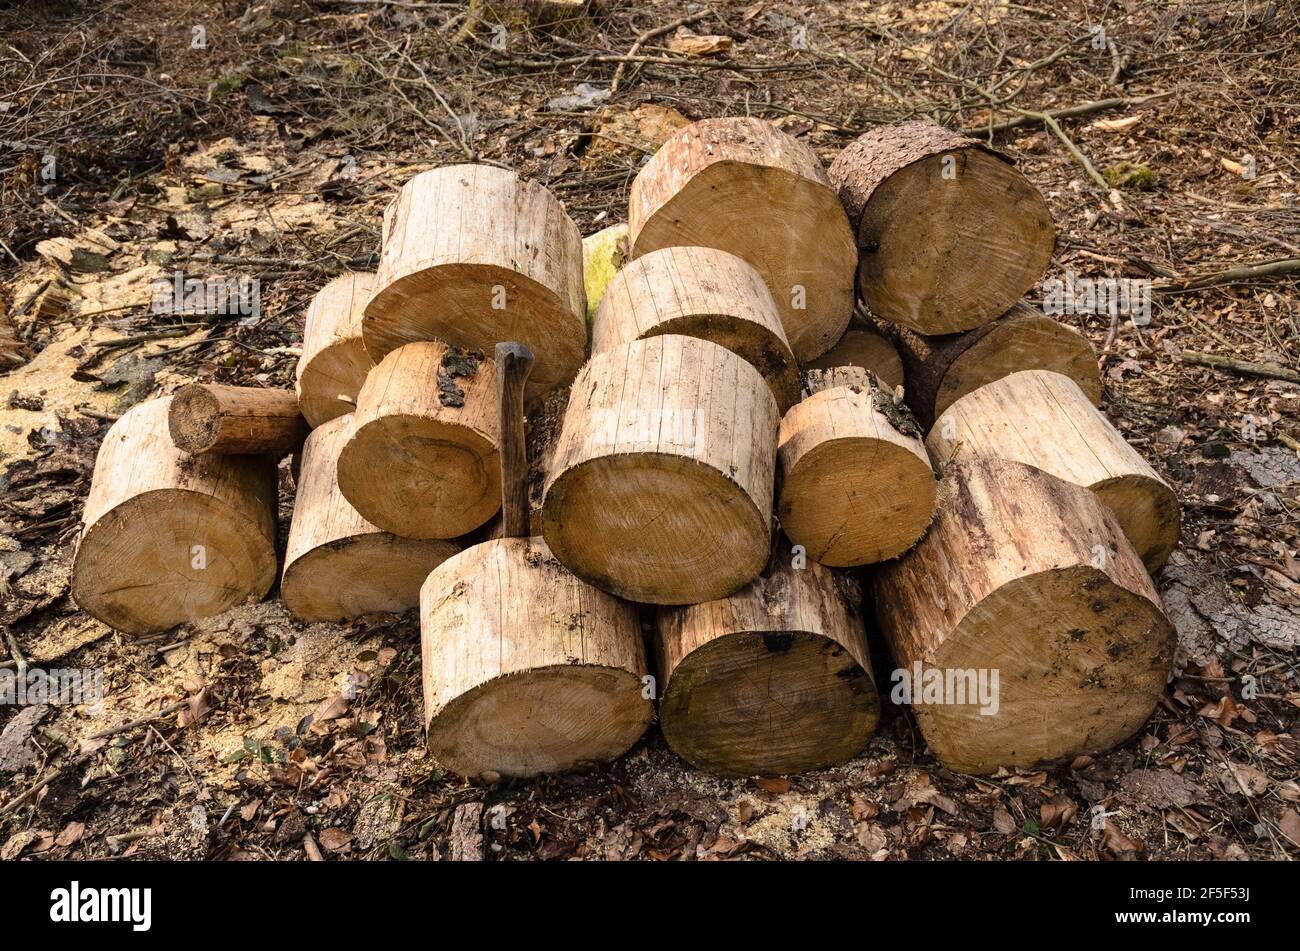 Holzfällerplatz oder Holzfällerplatz mit Haufen gehackter Stämme, Holzstapel im Wald, Querschnittsansicht, Rheinland-Pfalz, Deutschland, Europa Stockfoto